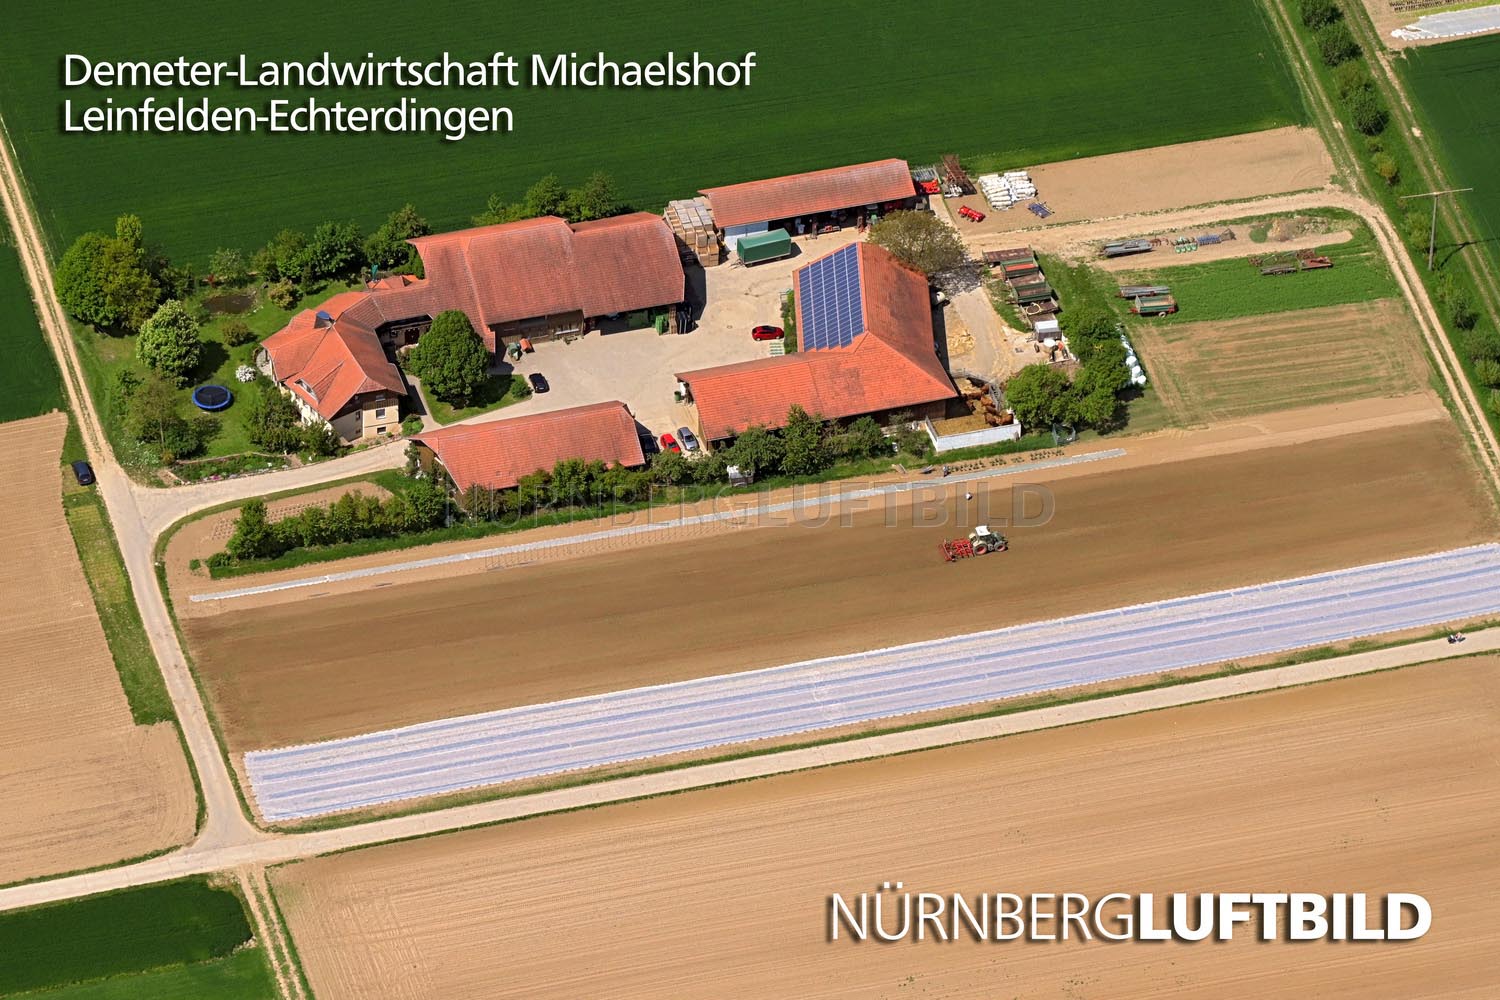 Demeter-Landwirtschaft Michaelshof, Leinfelden-Echterdingen